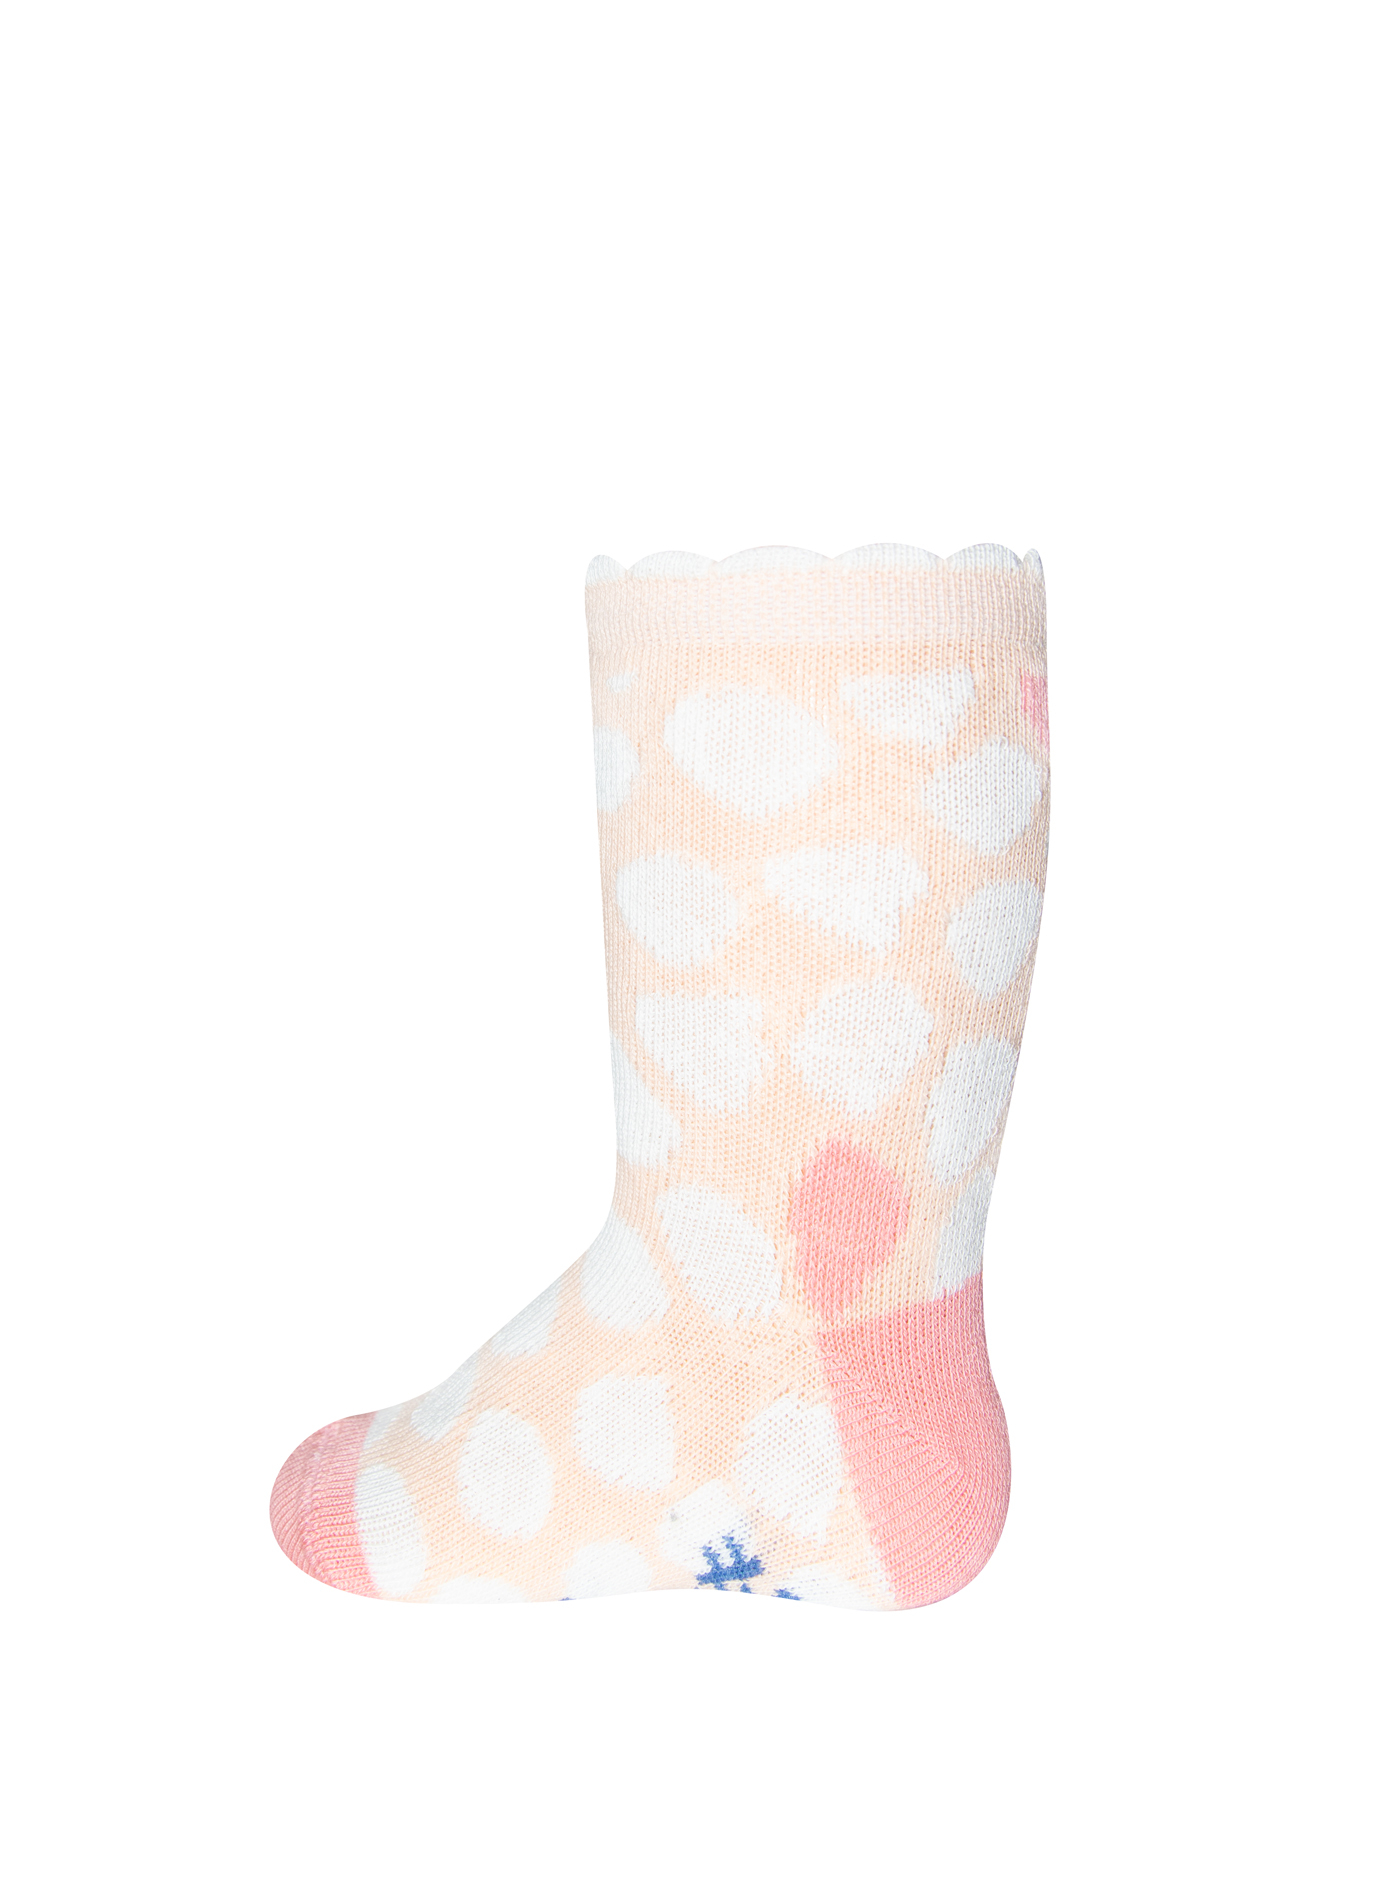 Mädchen-Socken (Doppelpack) Weiß und Rosa